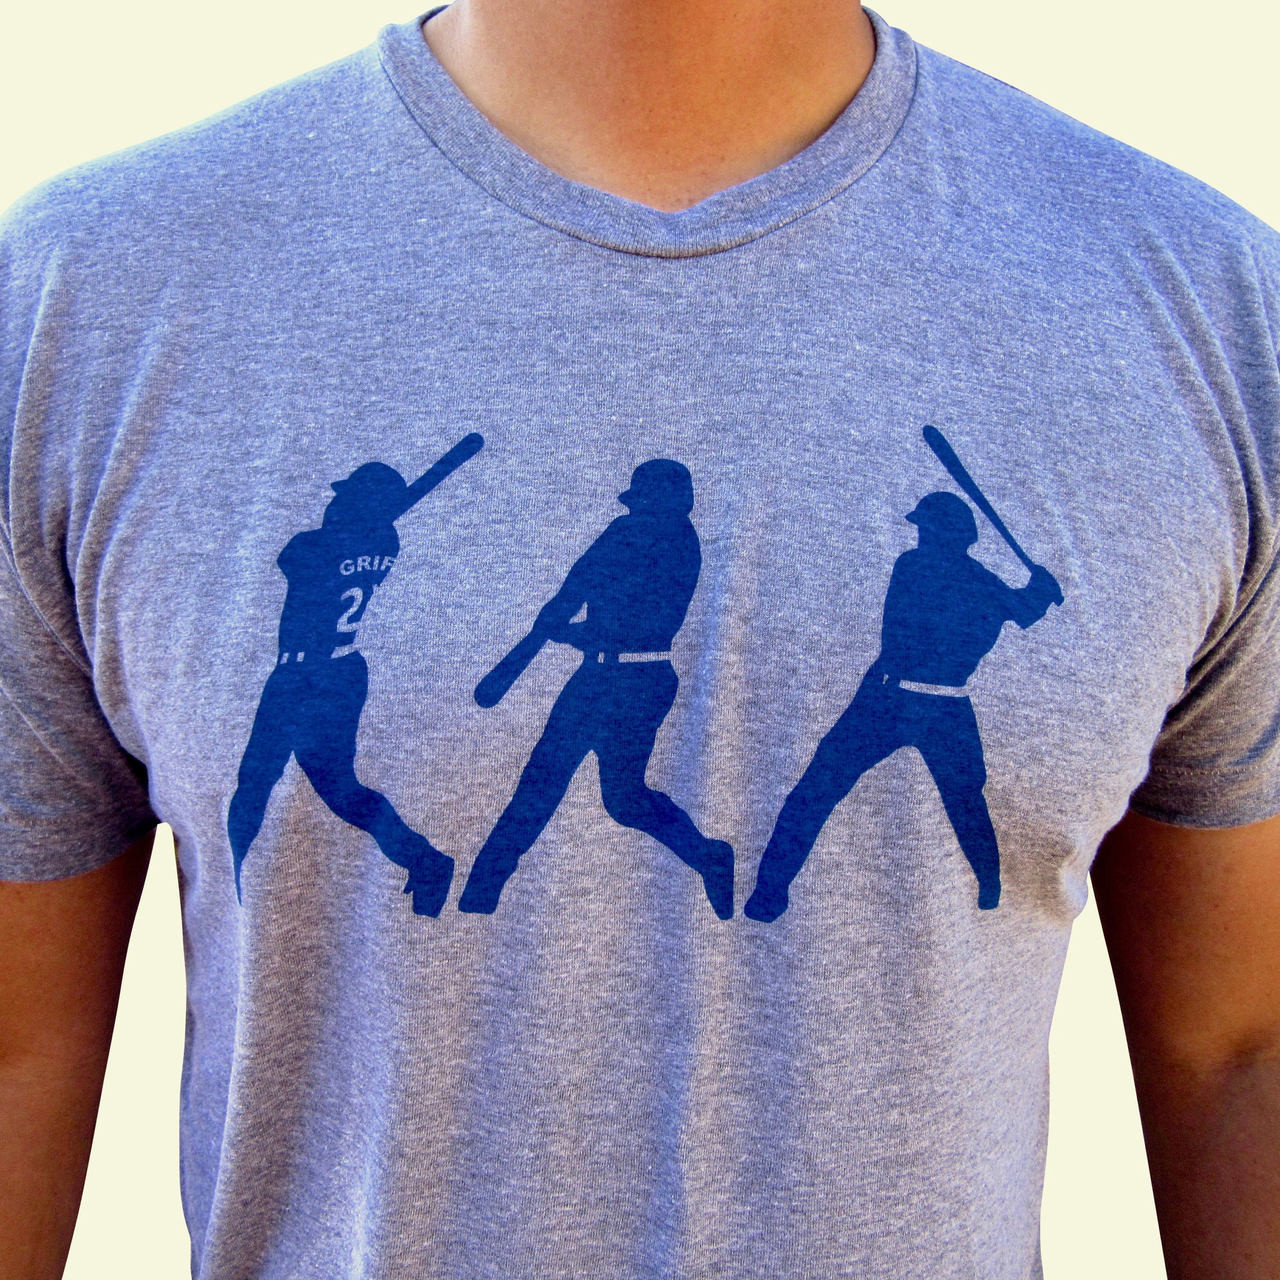 Ken Griffey Jr Swing Man T-Shirt Cotton Tee Shirt S-5Xl - AliExpress